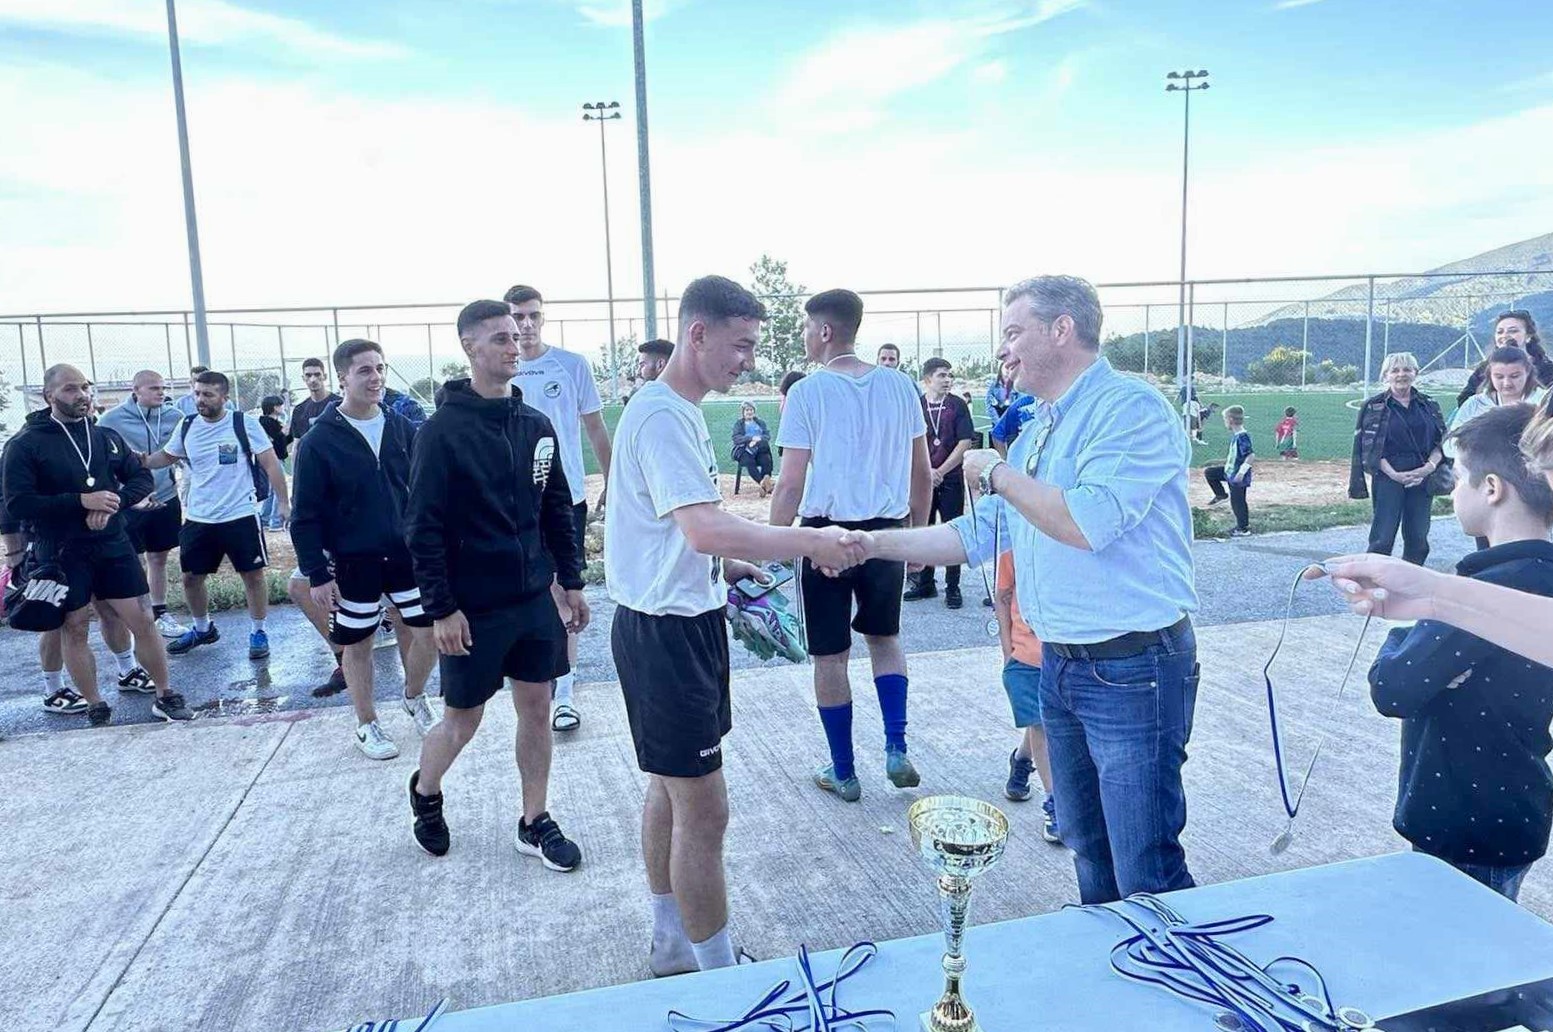 Δεκάδες συμμετοχές στο Πασχαλινό τουρνουά ποδοσφαίρου στη Ζαγορά